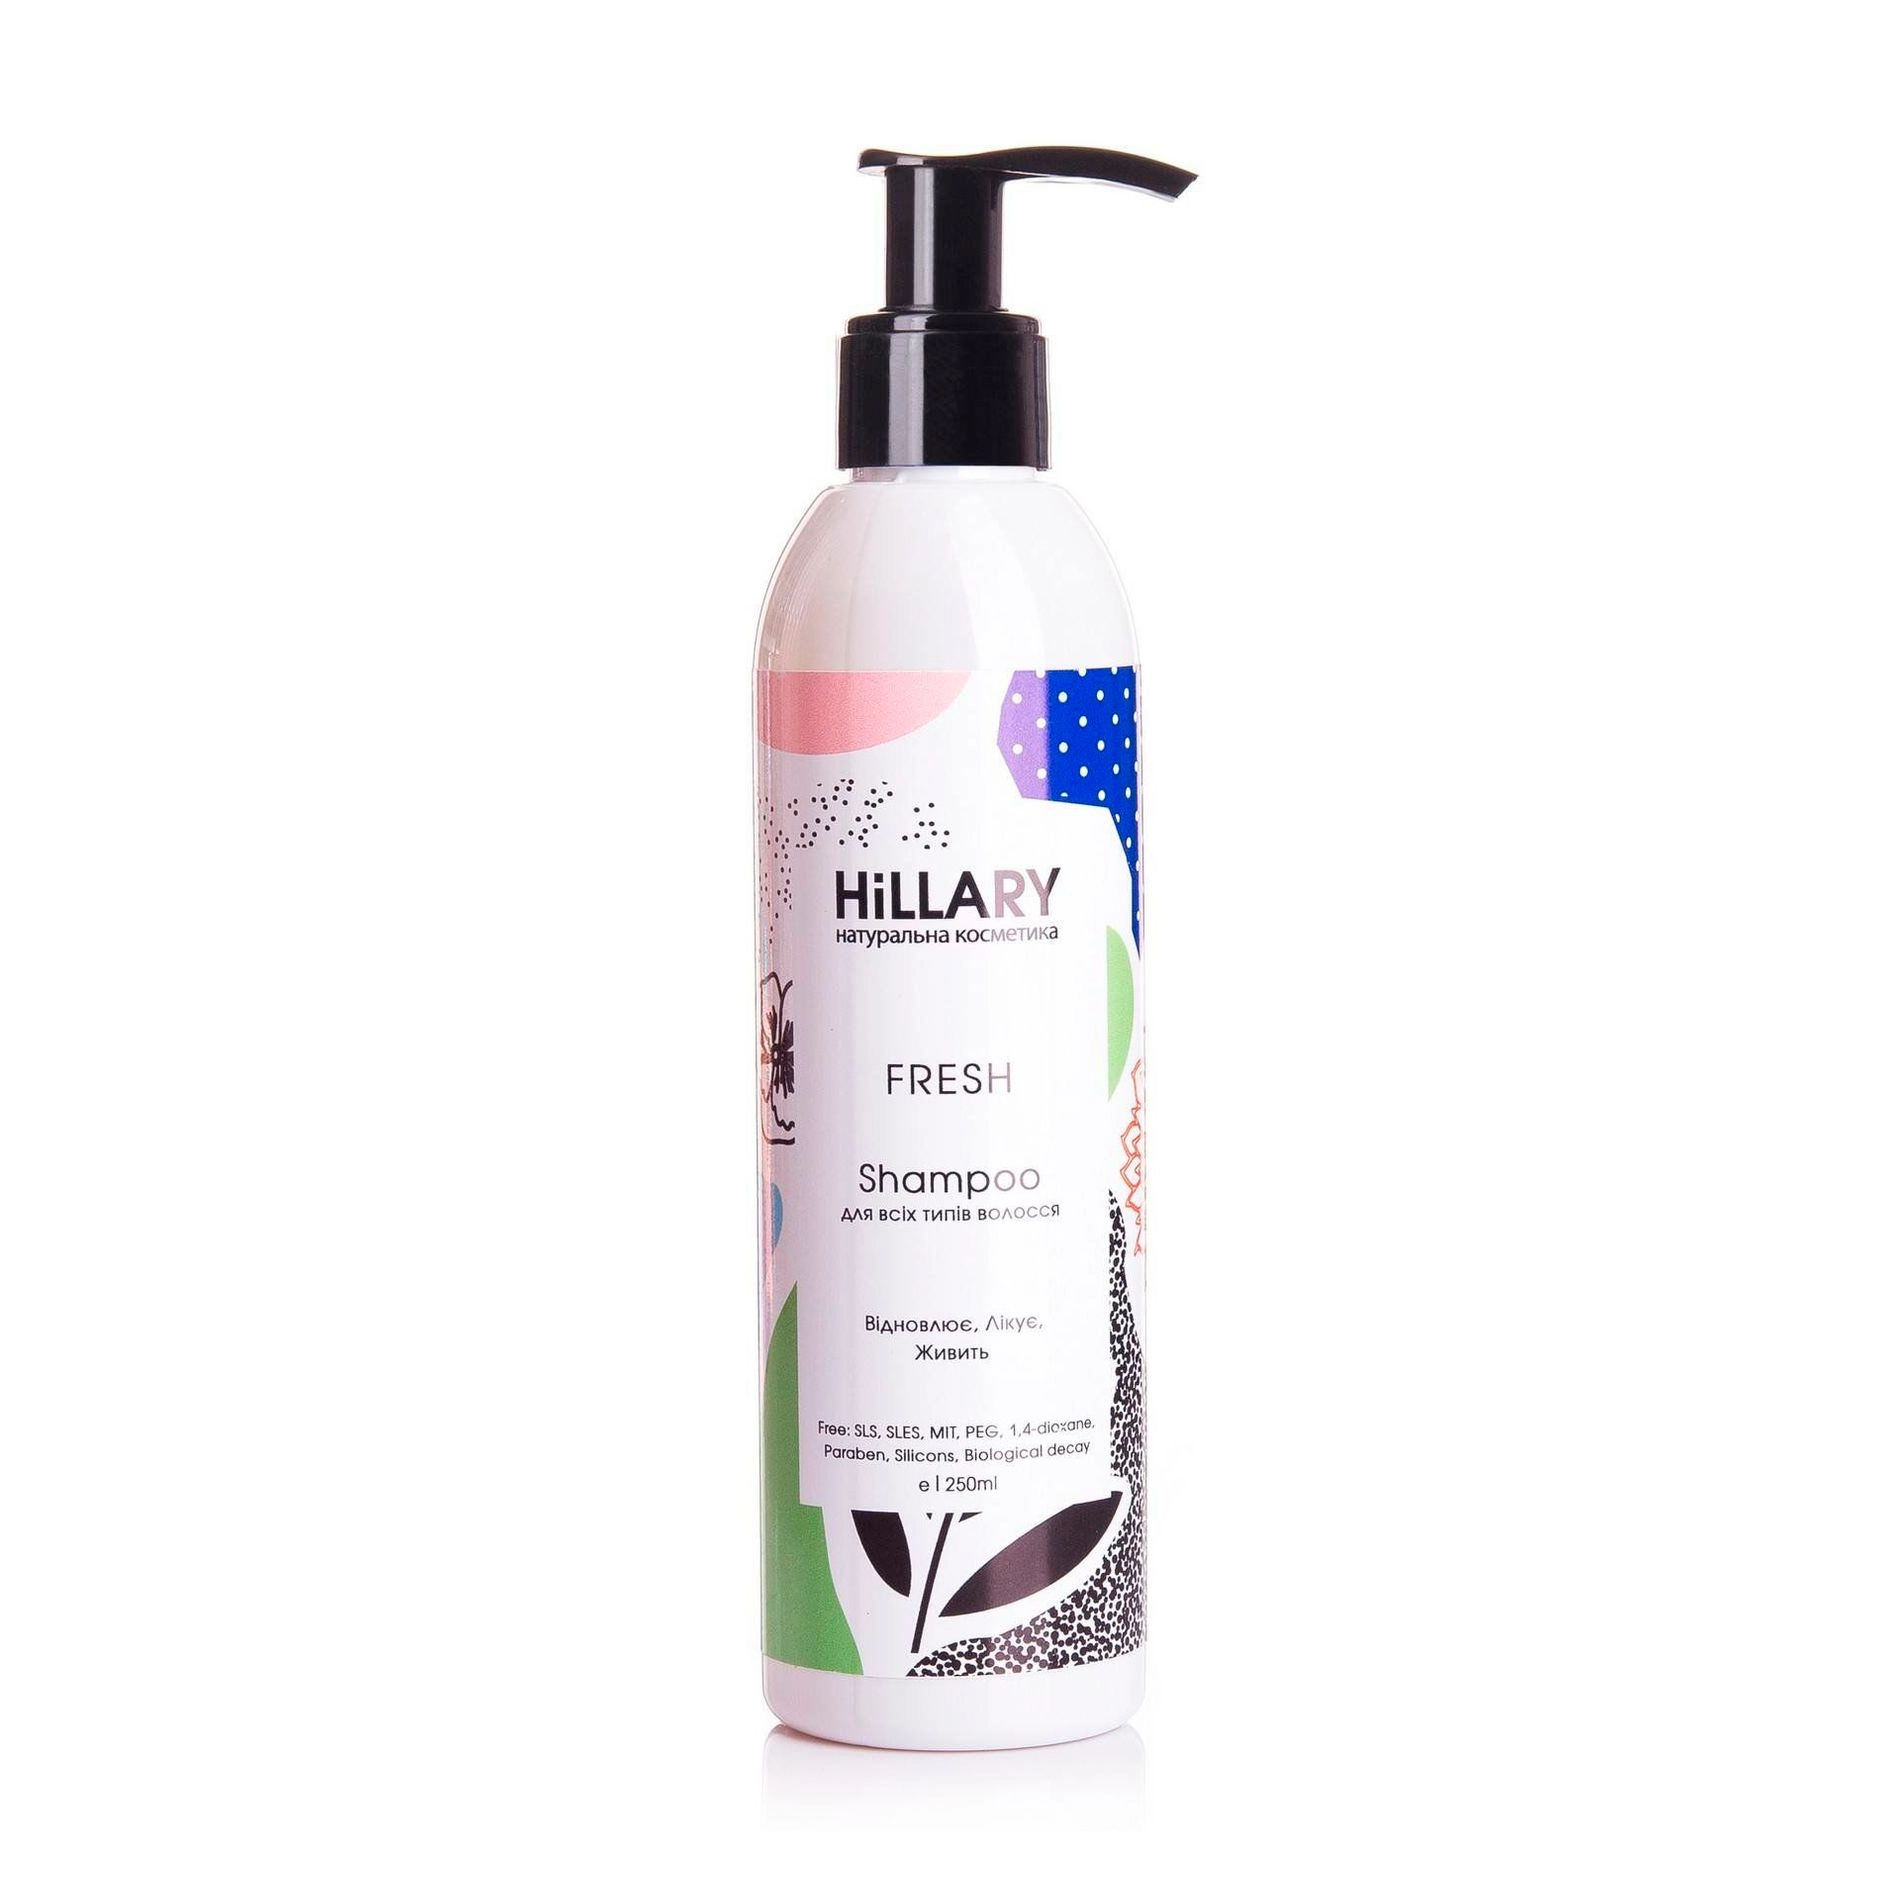 Hillary Безсульфатний шампунь Fresh Shampoo для всіх типів волосся - фото N1